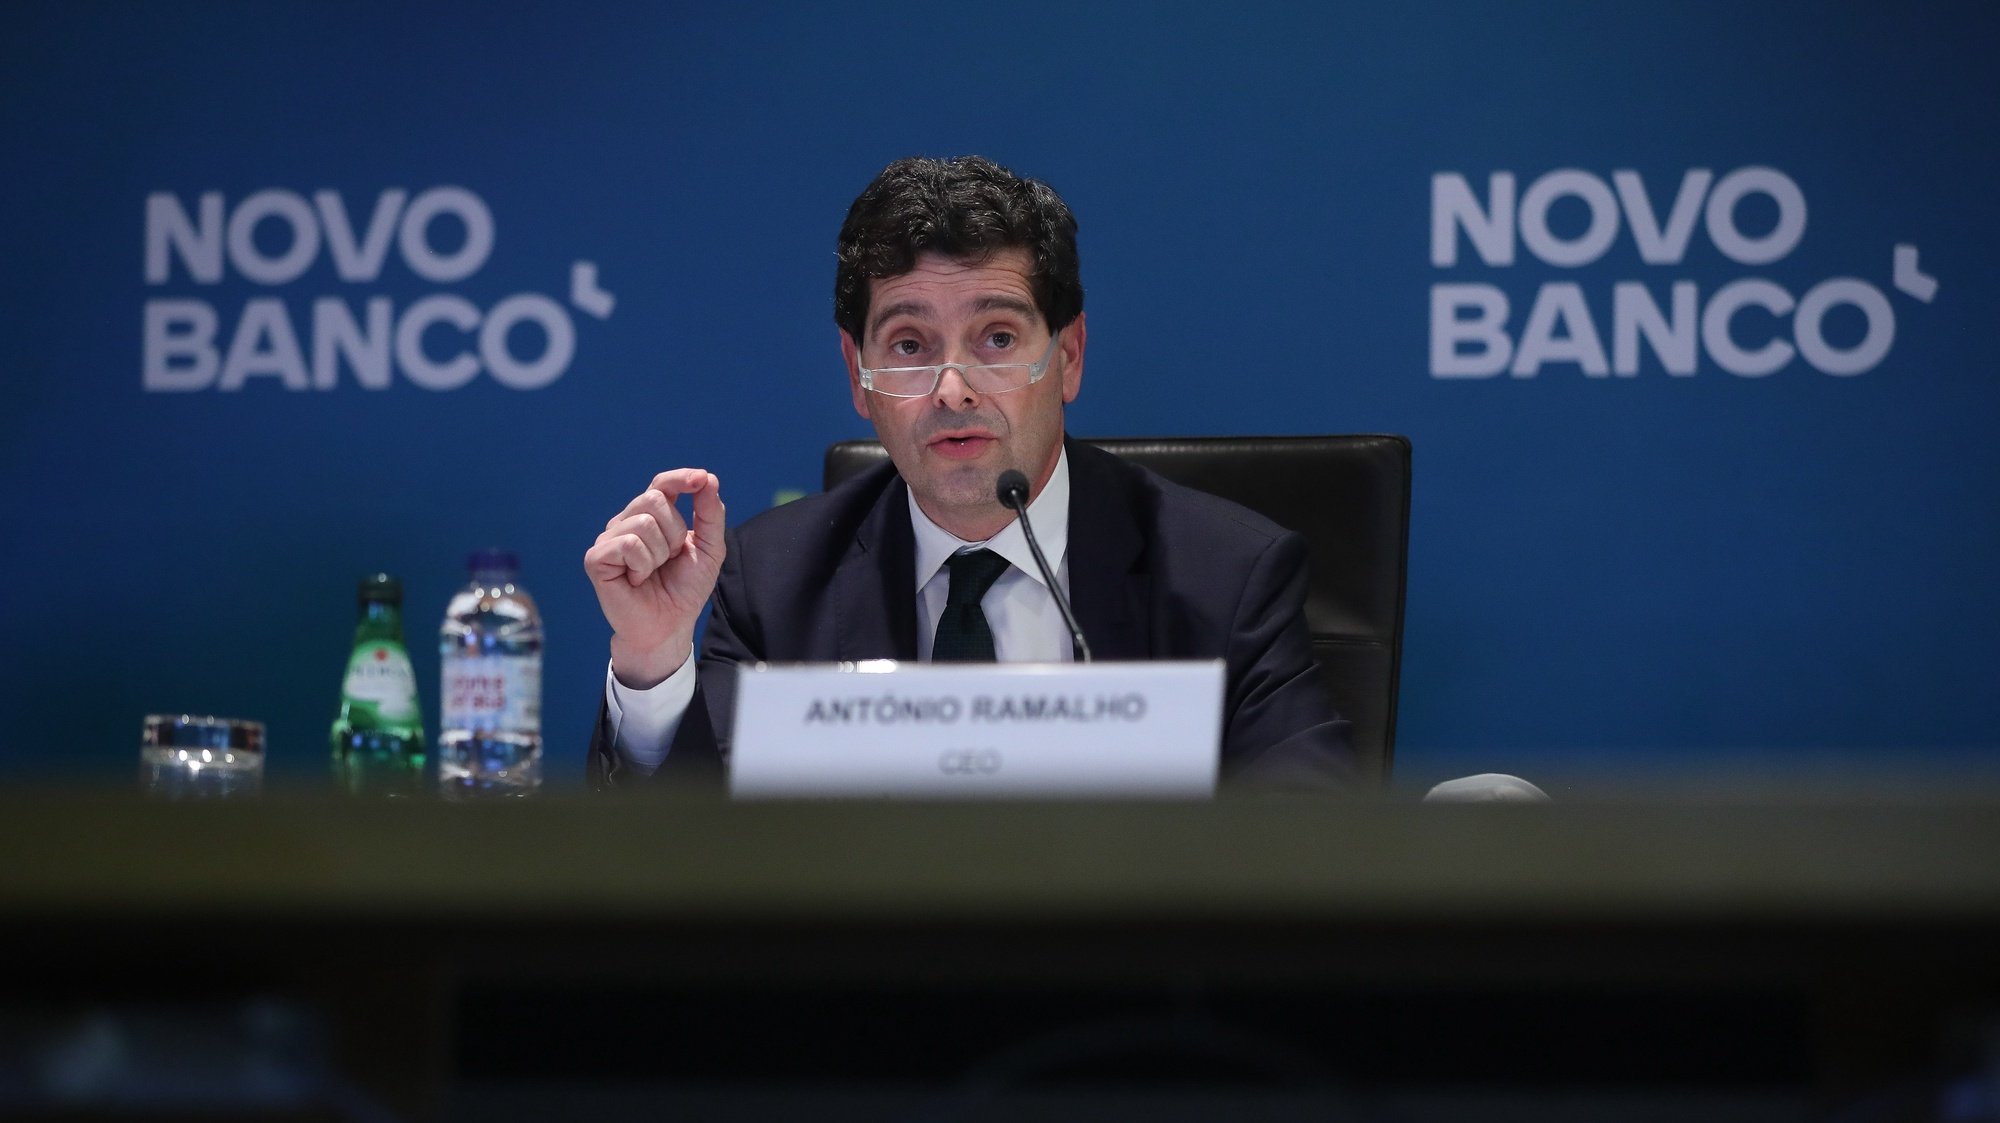 O diretor Executivo do Novo Banco, António Ramalho, durante a conferência de imprensa de apresentação de resultados de 2020, na sede do Novo Banco, em Lisboa, em Lisboa, 26 de março de 2021. MÁRIO CRUZ/LUSA